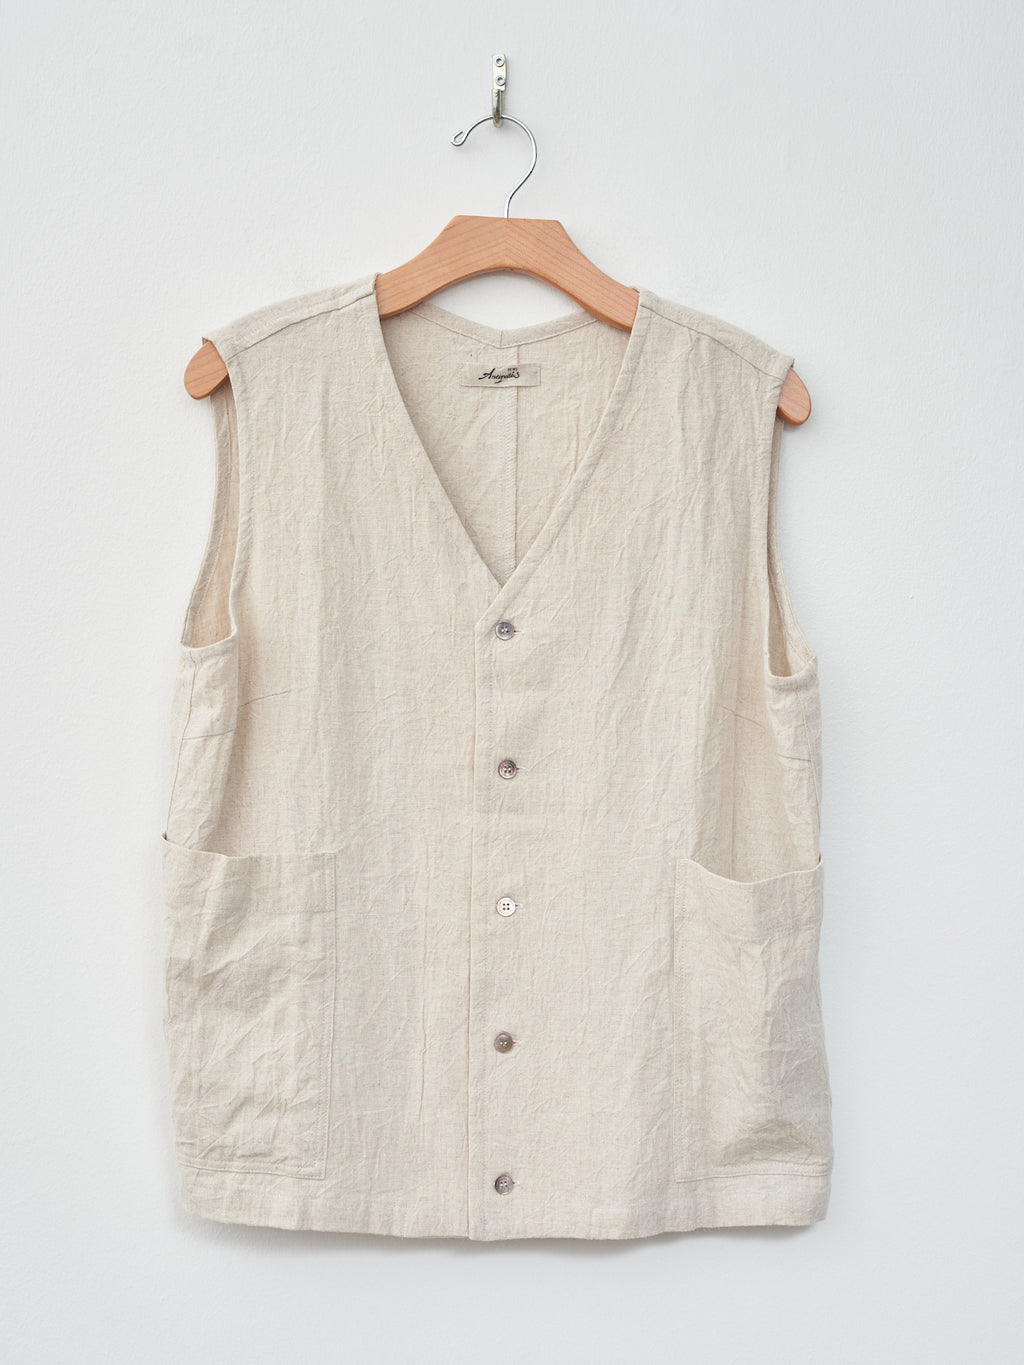 Namu Shop - Ichi Antiquites Linen Vintage Vest - Natural